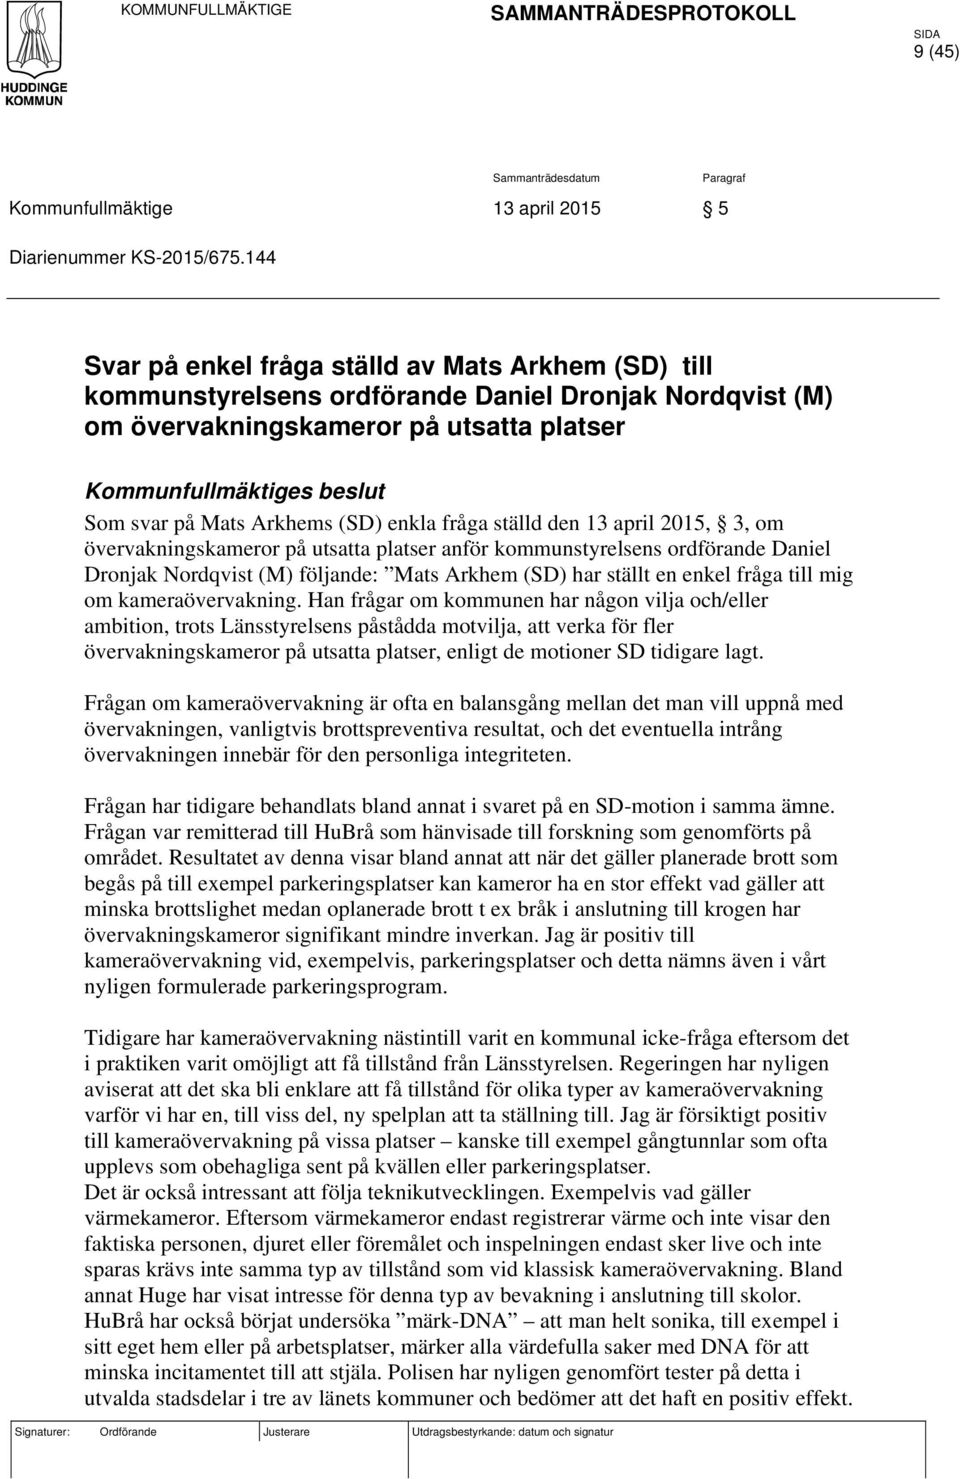 Arkhems (SD) enkla fråga ställd den 13 april 2015, 3, om övervakningskameror på utsatta platser anför kommunstyrelsens ordförande Daniel Dronjak Nordqvist (M) följande: Mats Arkhem (SD) har ställt en